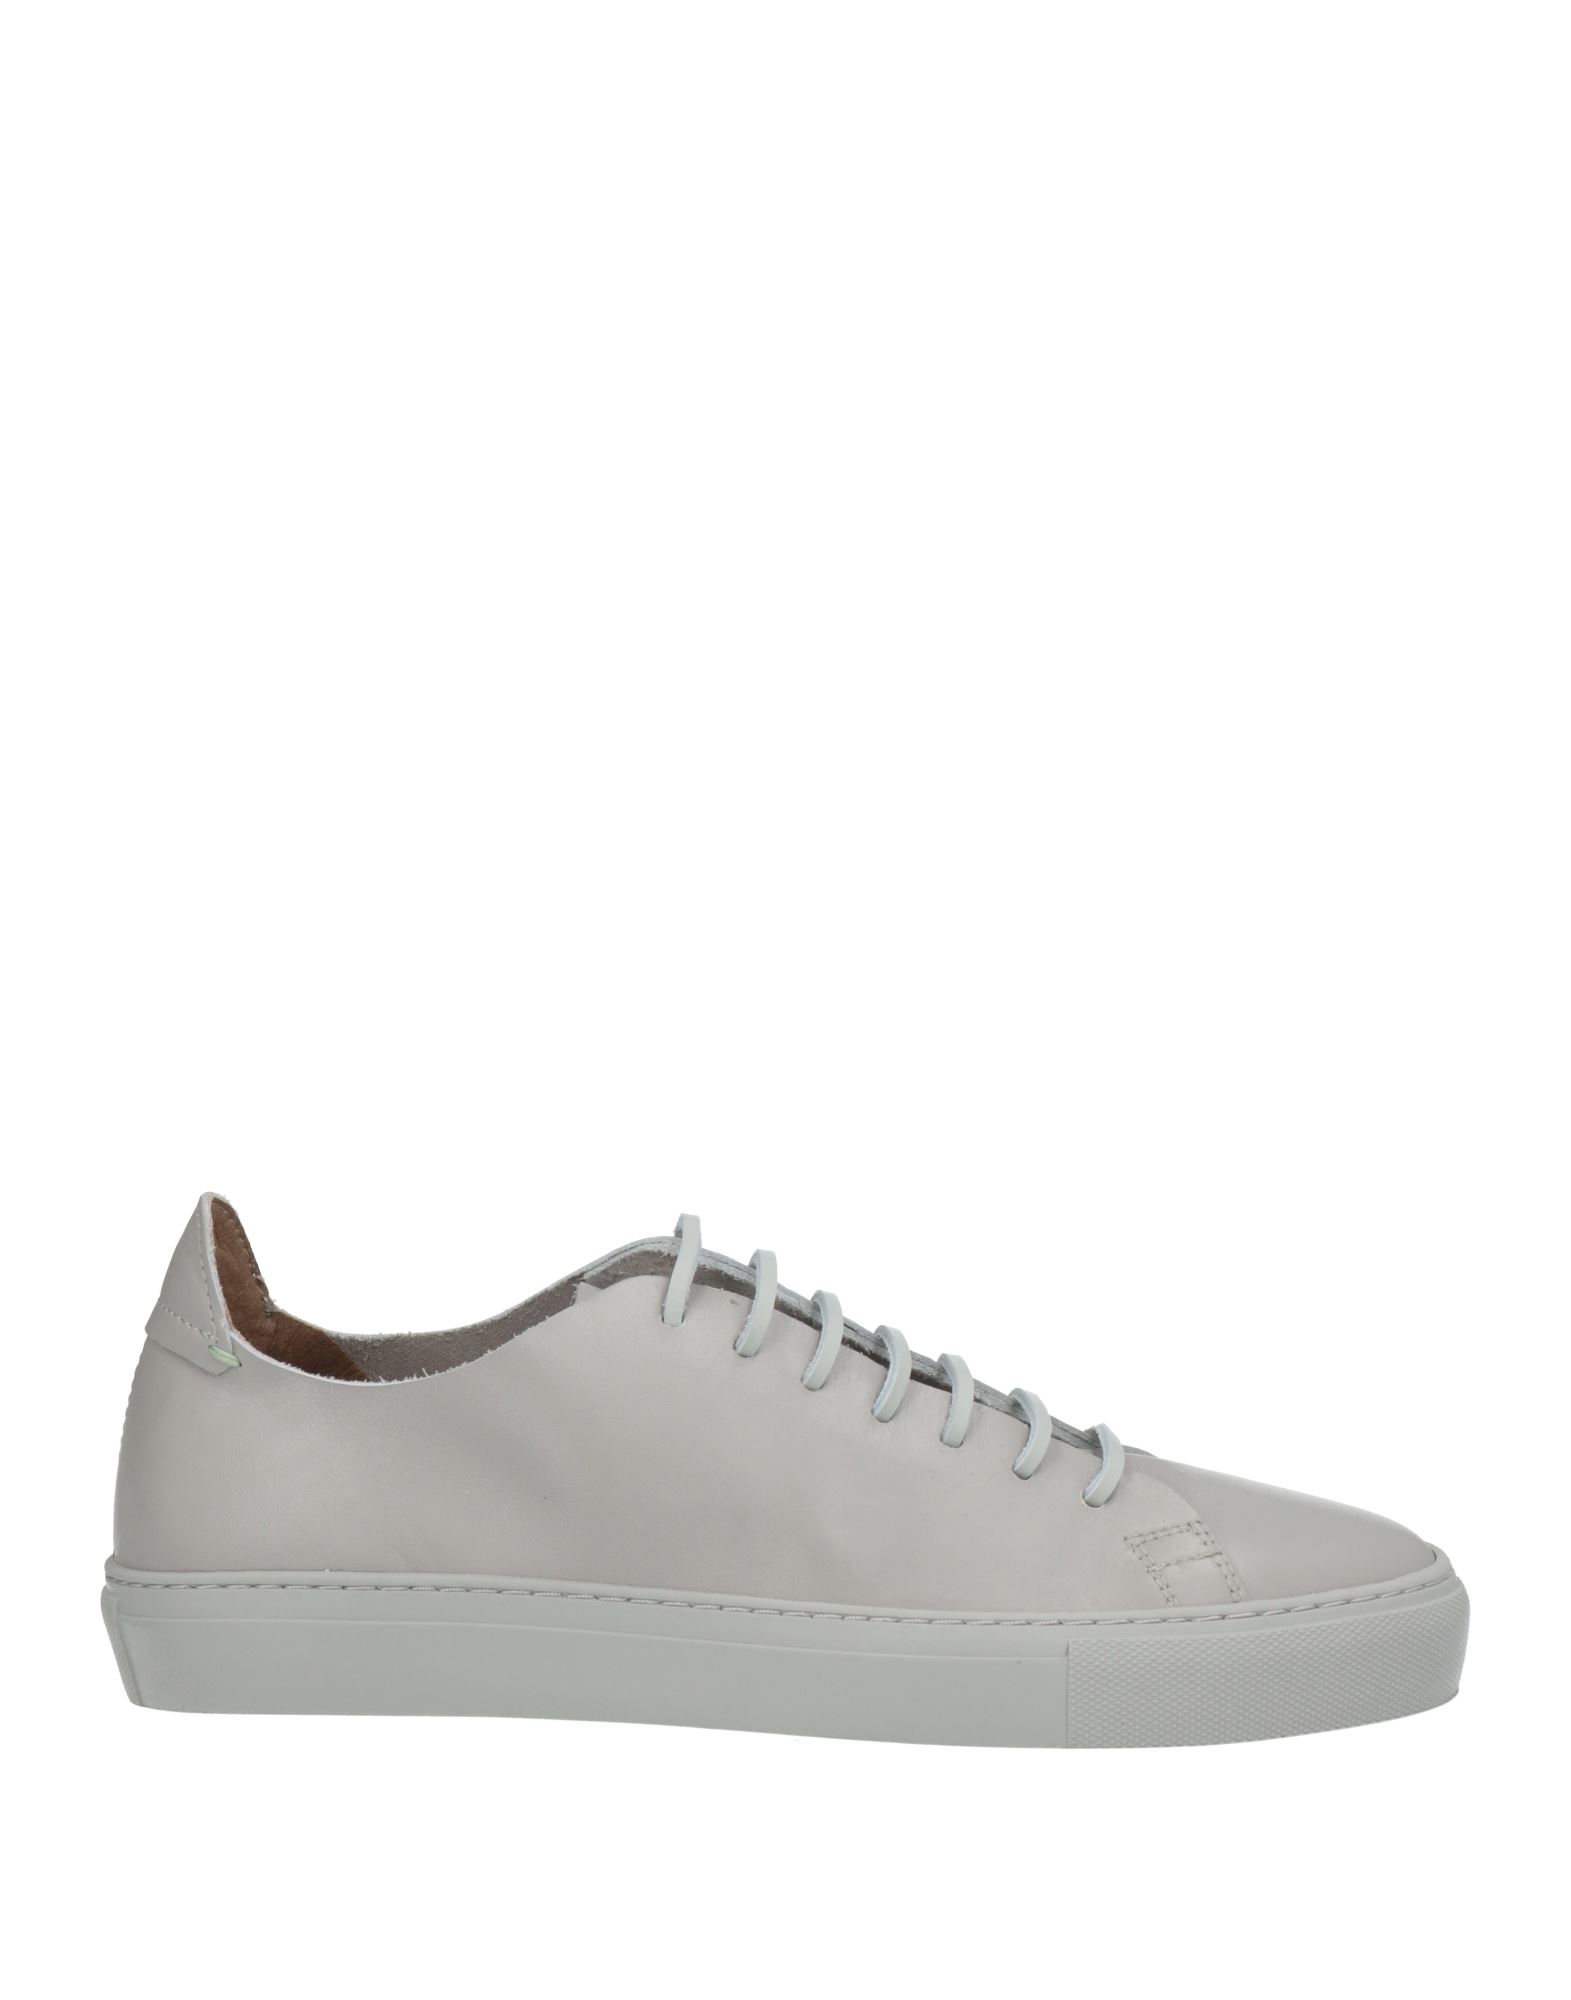 Liu •jo Man Sneakers In Grey